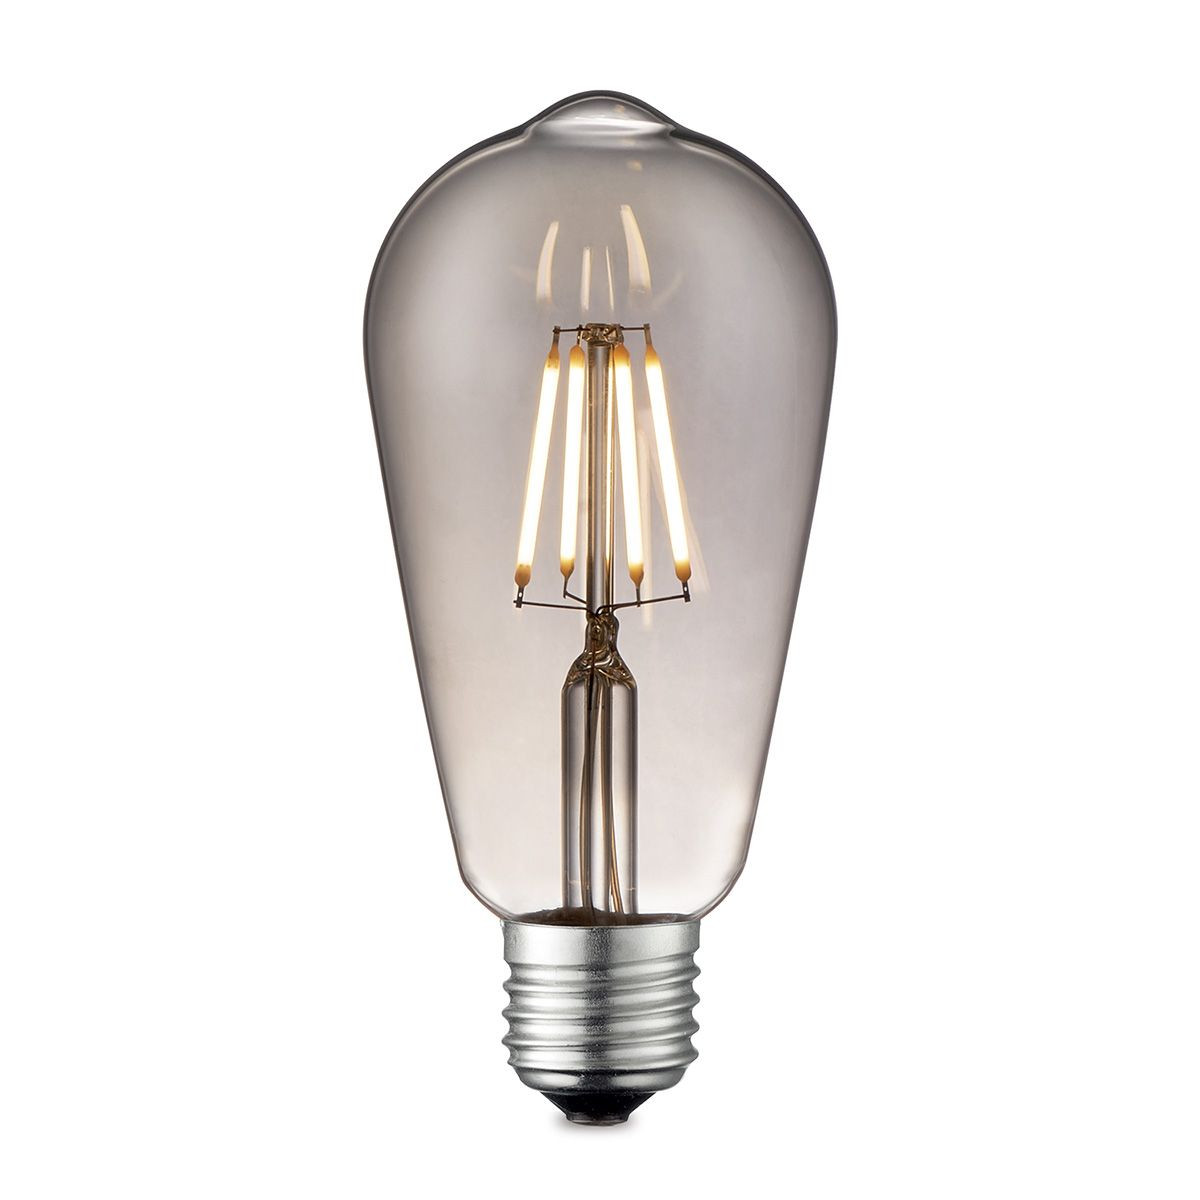 Edison Vintage LED lamp E27 LED filament lichtbron, Deco Drop ST64, 6.4/6.4/14cm, Rook, Retro LED lamp Dimbaar, 6W 160lm 1800K, warm wit licht, geschikt voor E27 fitting